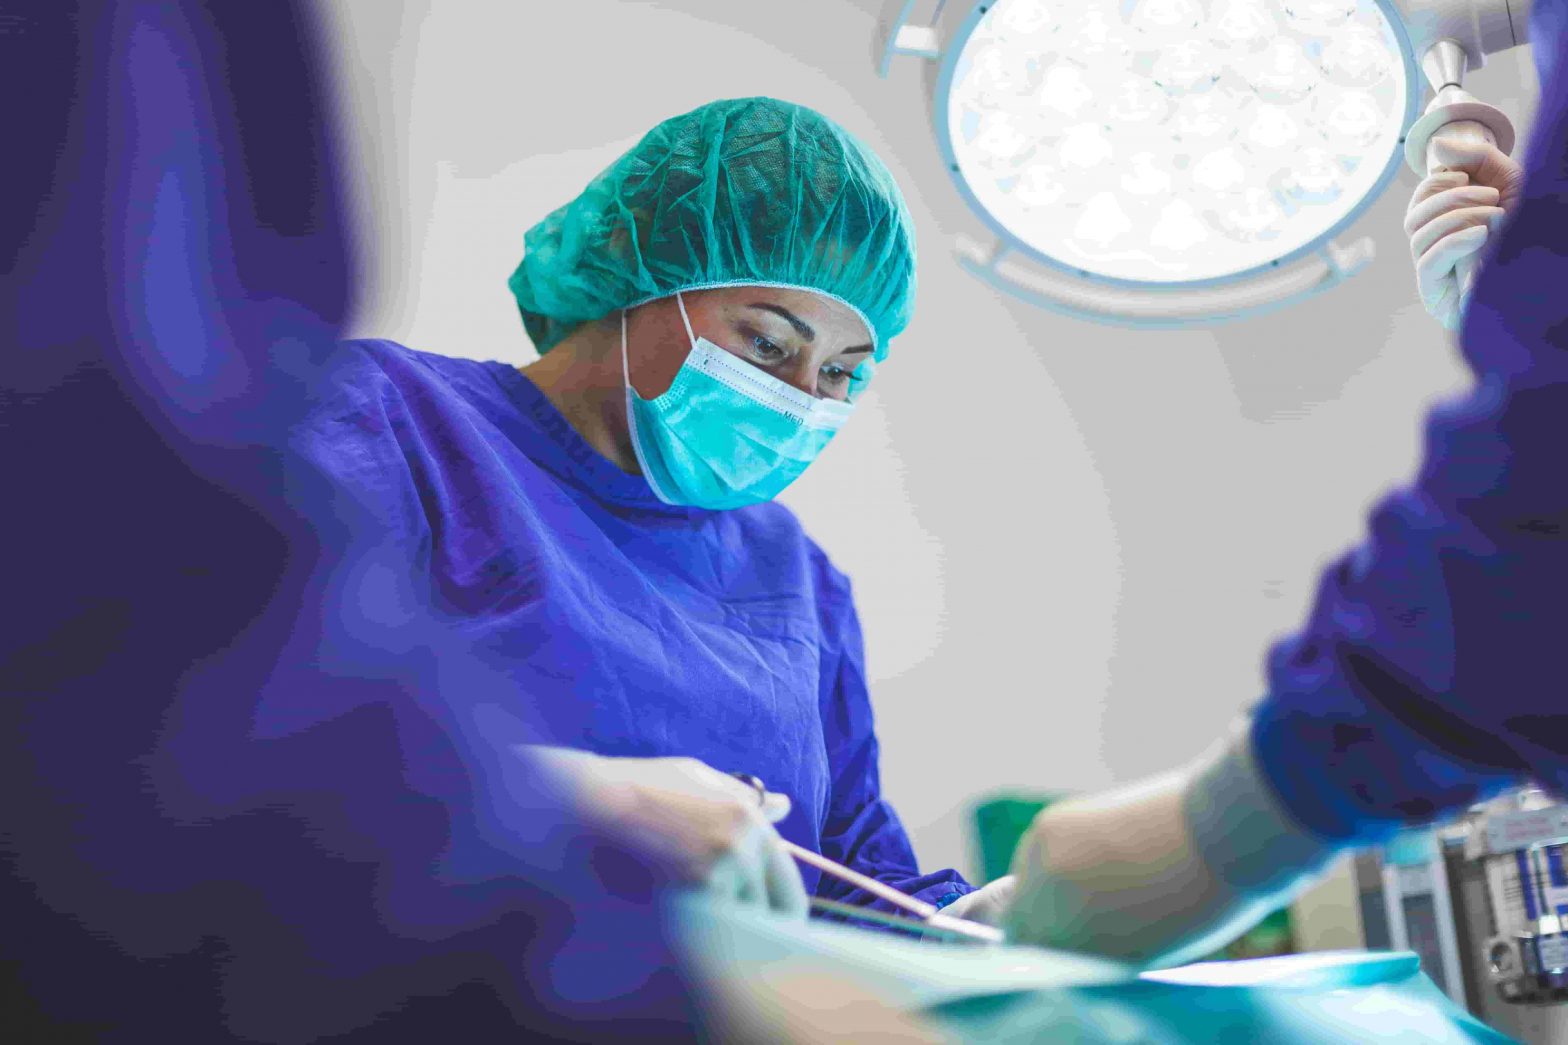 Entender la evolución del ámbito quirúrgico es una necesidad para todos los profesionales con intereses en el área de la mastología.